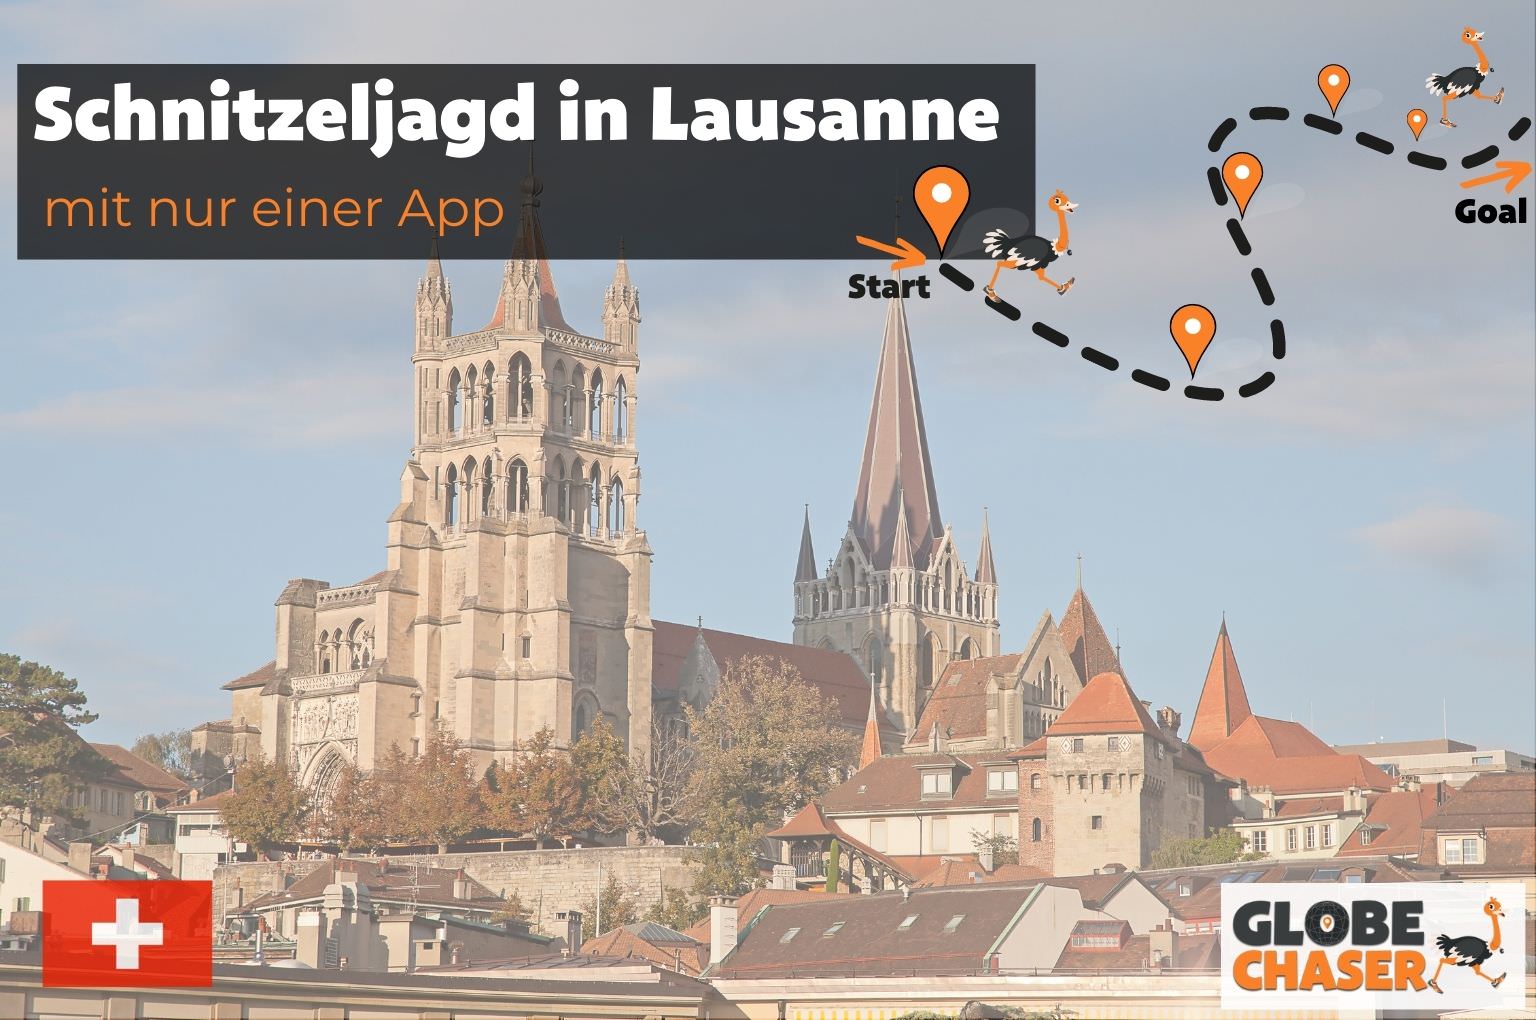 Schnitzeljagd in Lausanne mit App - Globe Chaser Erlebnisse Schweiz